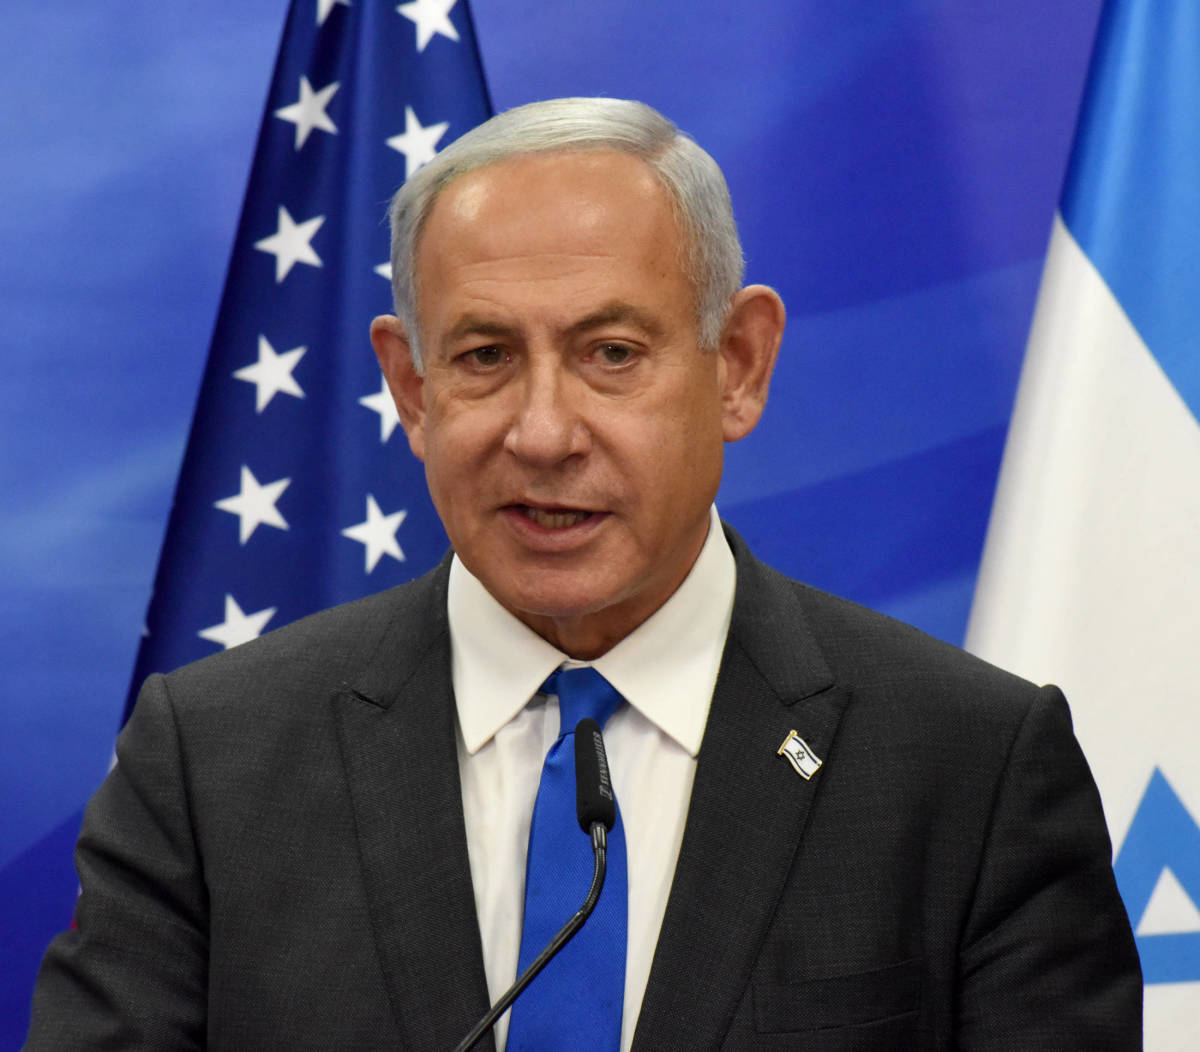 20230206-image-imago-pb-Benjamin Netanjahu